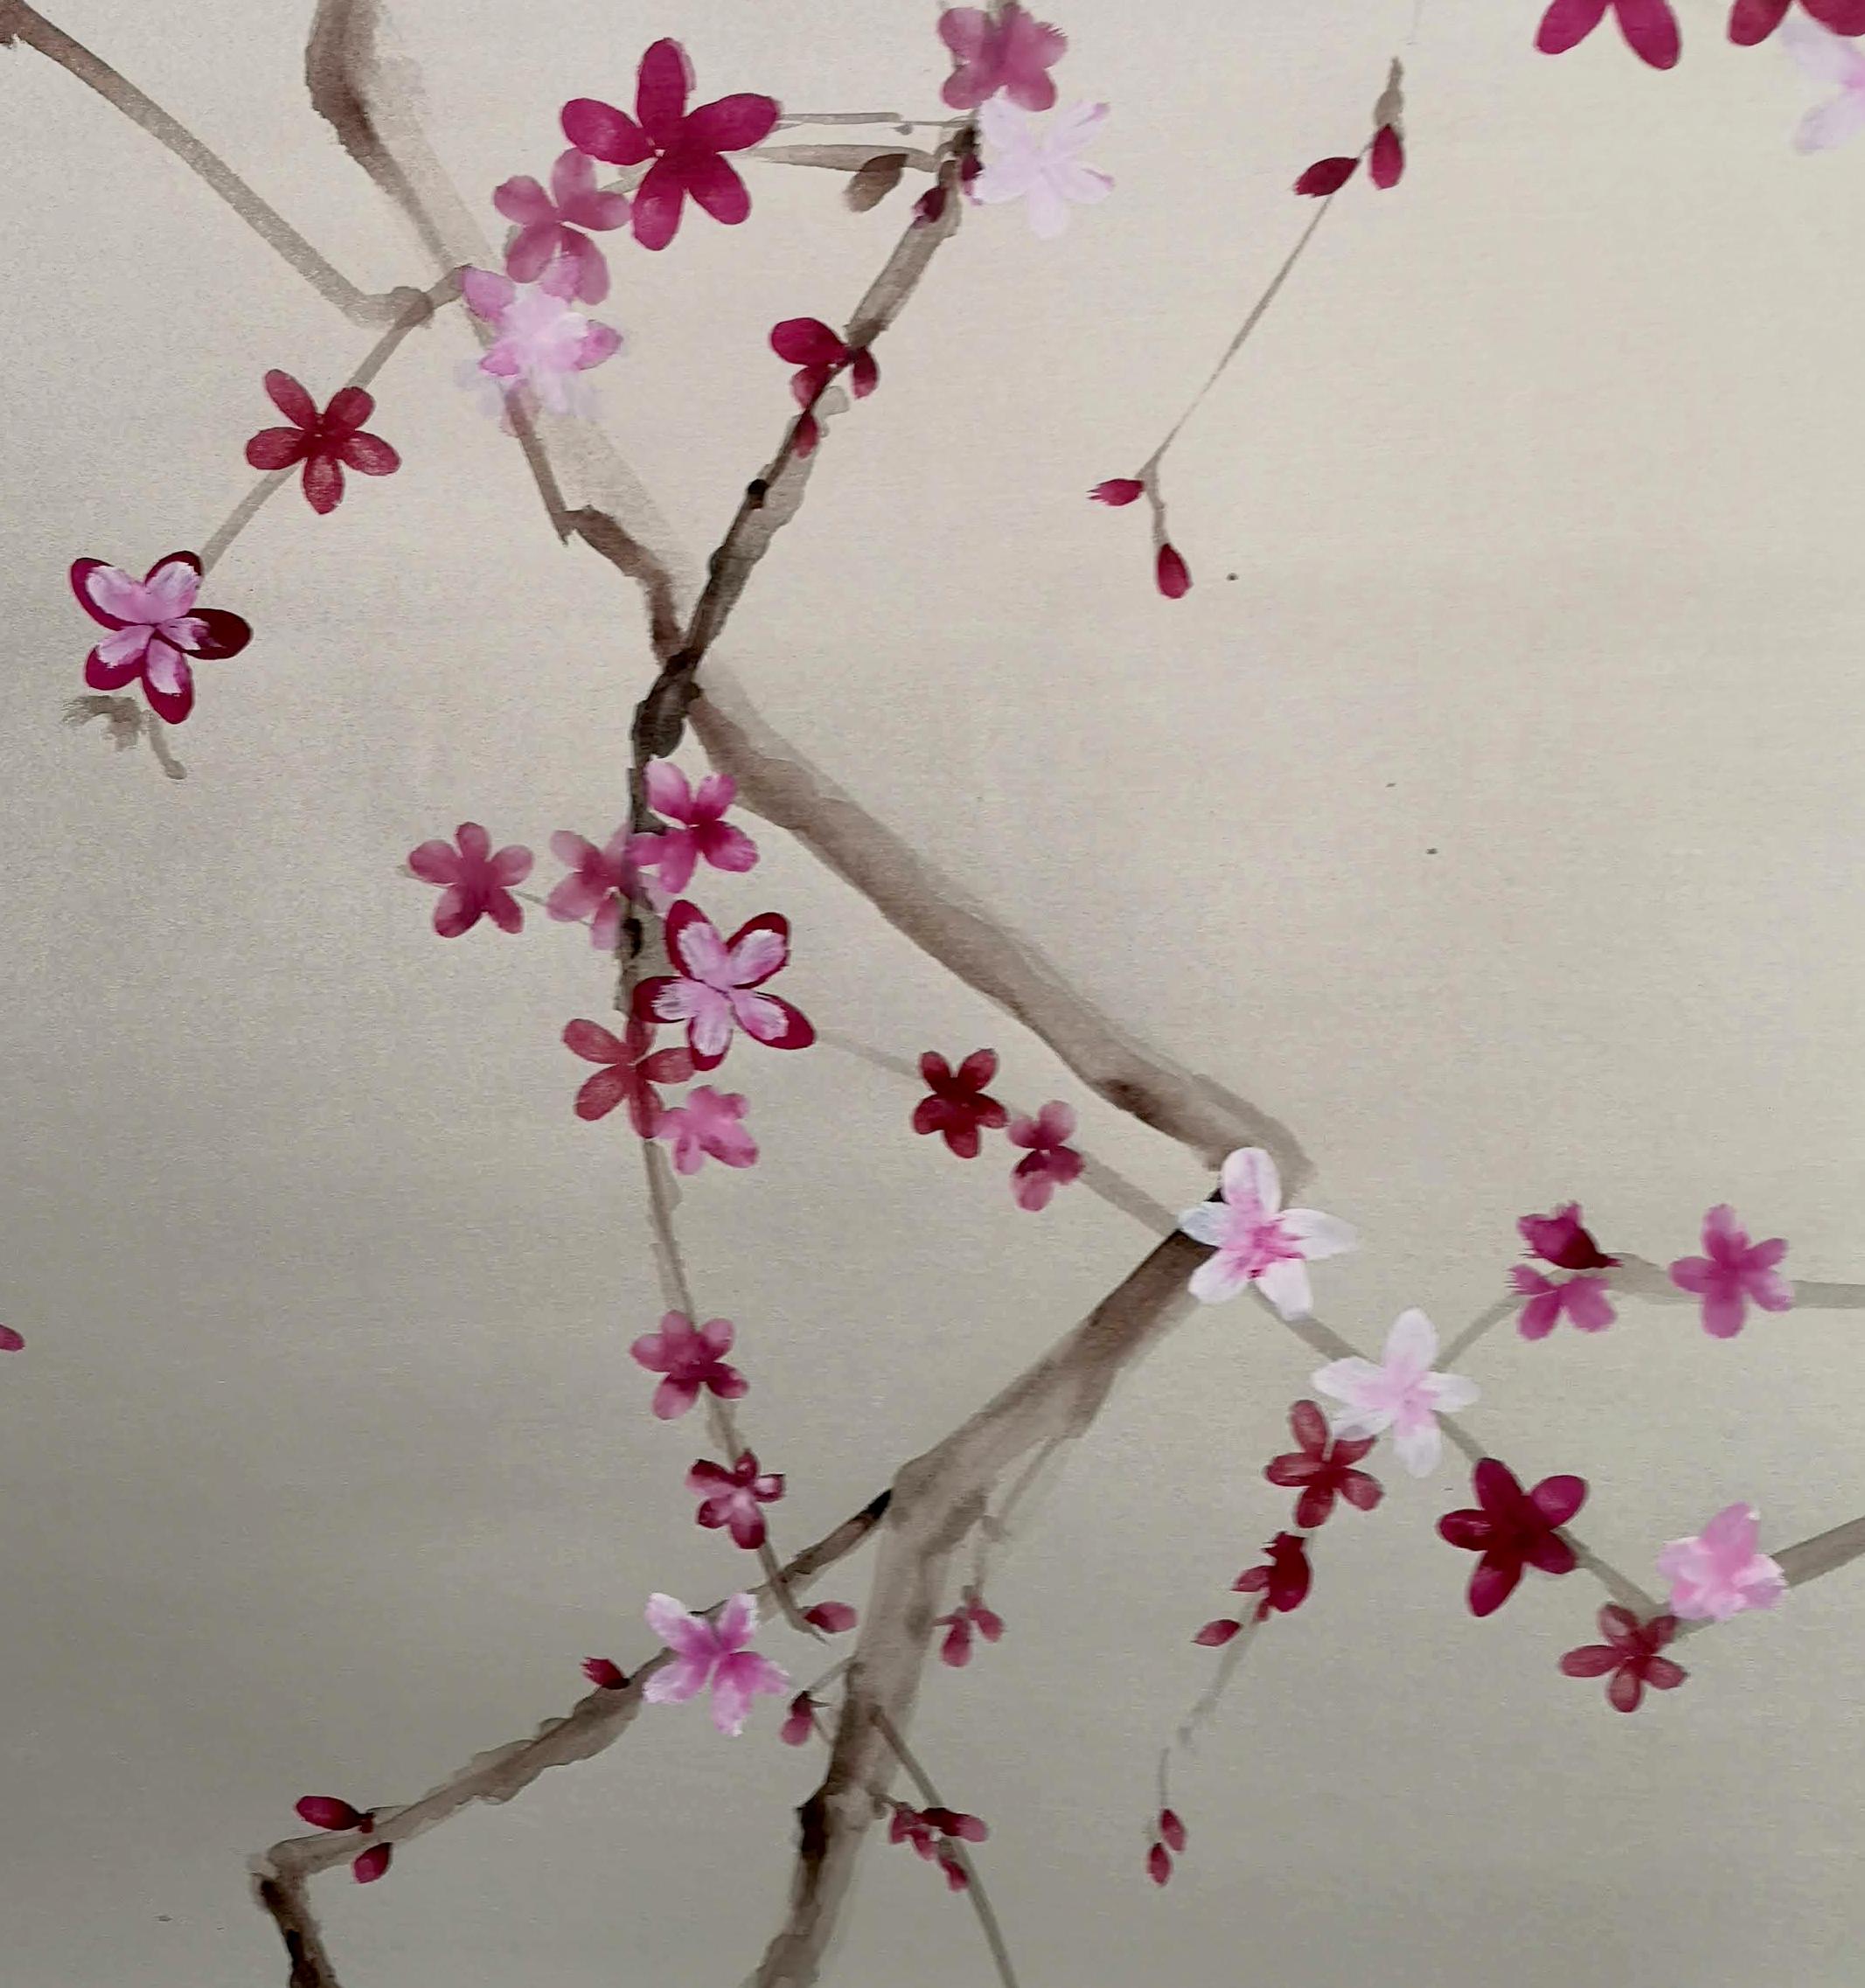 Das aus drei Tafeln bestehende Werk stellt eine Pflaumenblüte dar. Um diesen zarten Effekt zu erzielen, wurde die Sumi-e-Technik verwendet. Das Werk wurde vollständig von Hand auf Papier aus 100 % natürlicher Baumwolle gemalt und von Hand mit einer